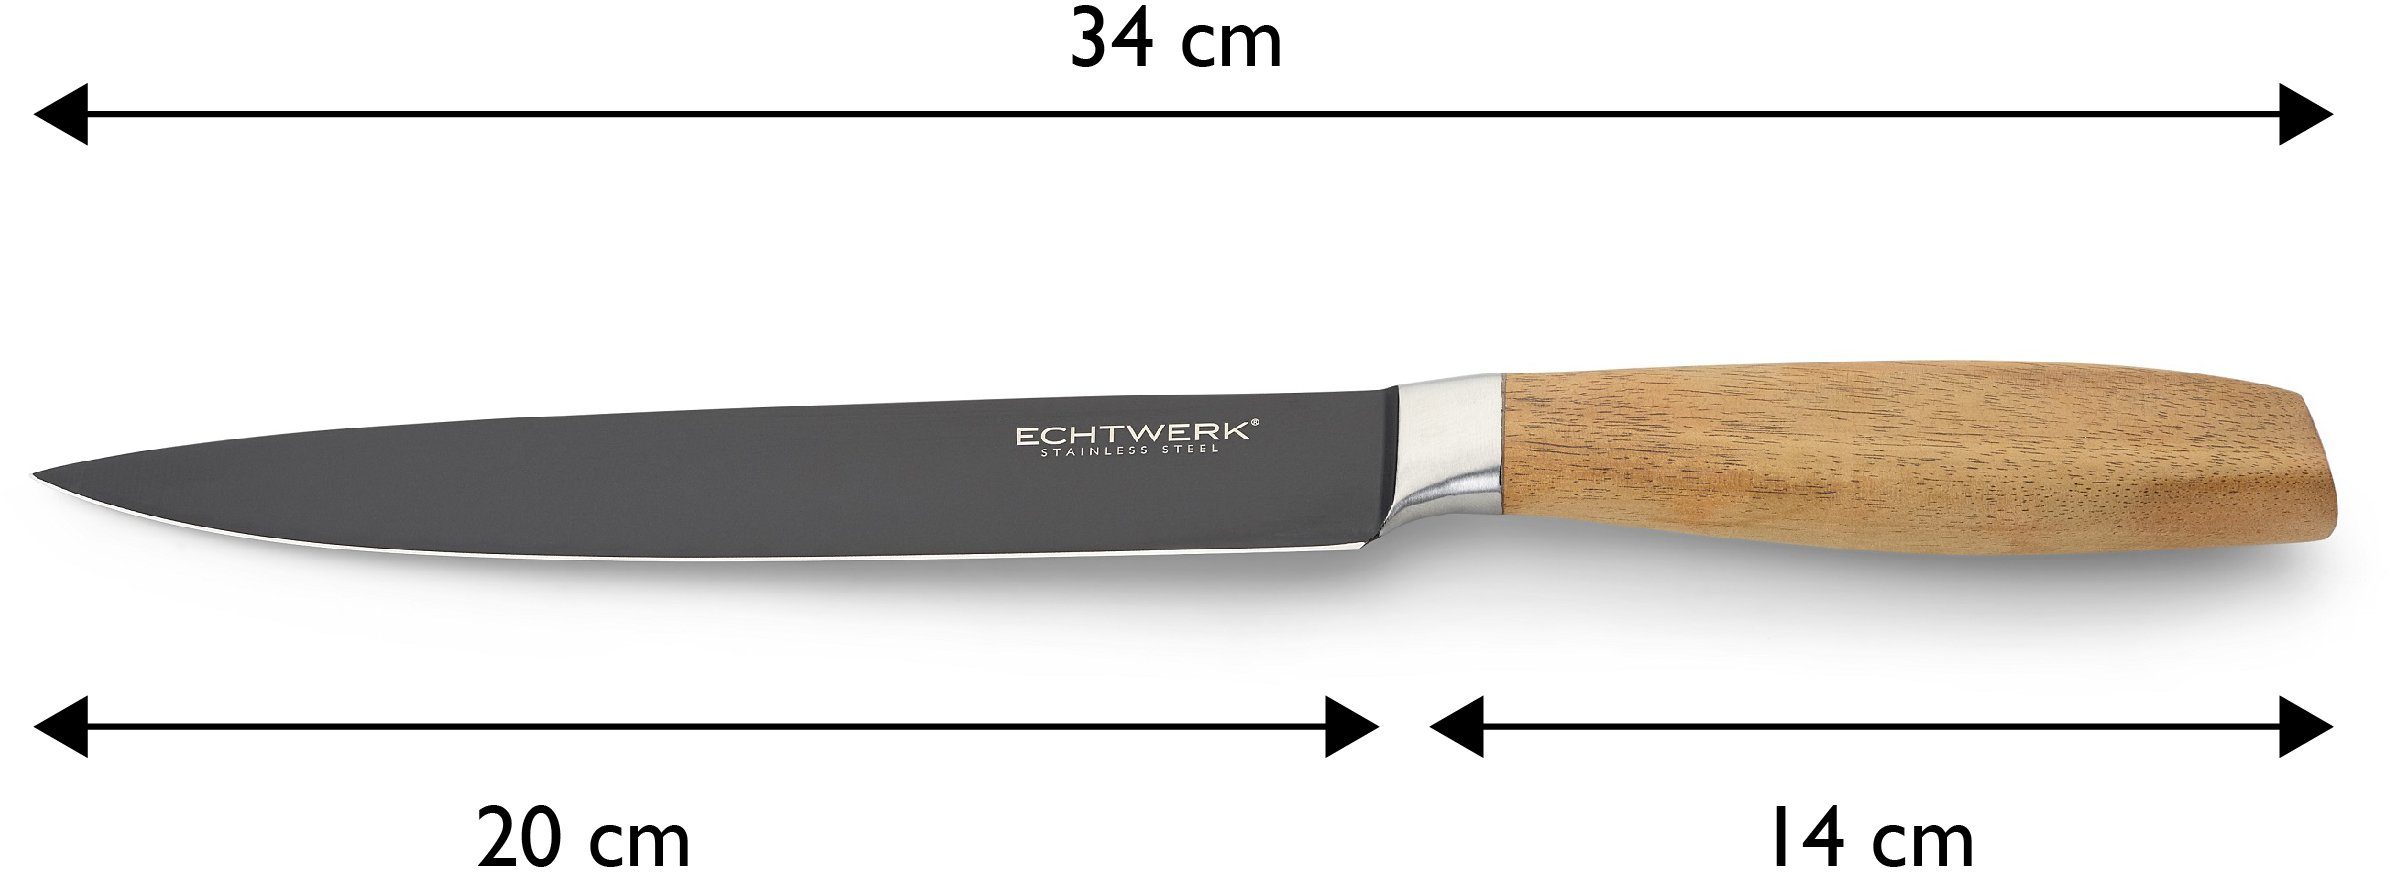 ECHTWERK Fleischmesser Classic, hochwertigem aus Akazienholzgriff, cm Black-Edition, 20 Stahl